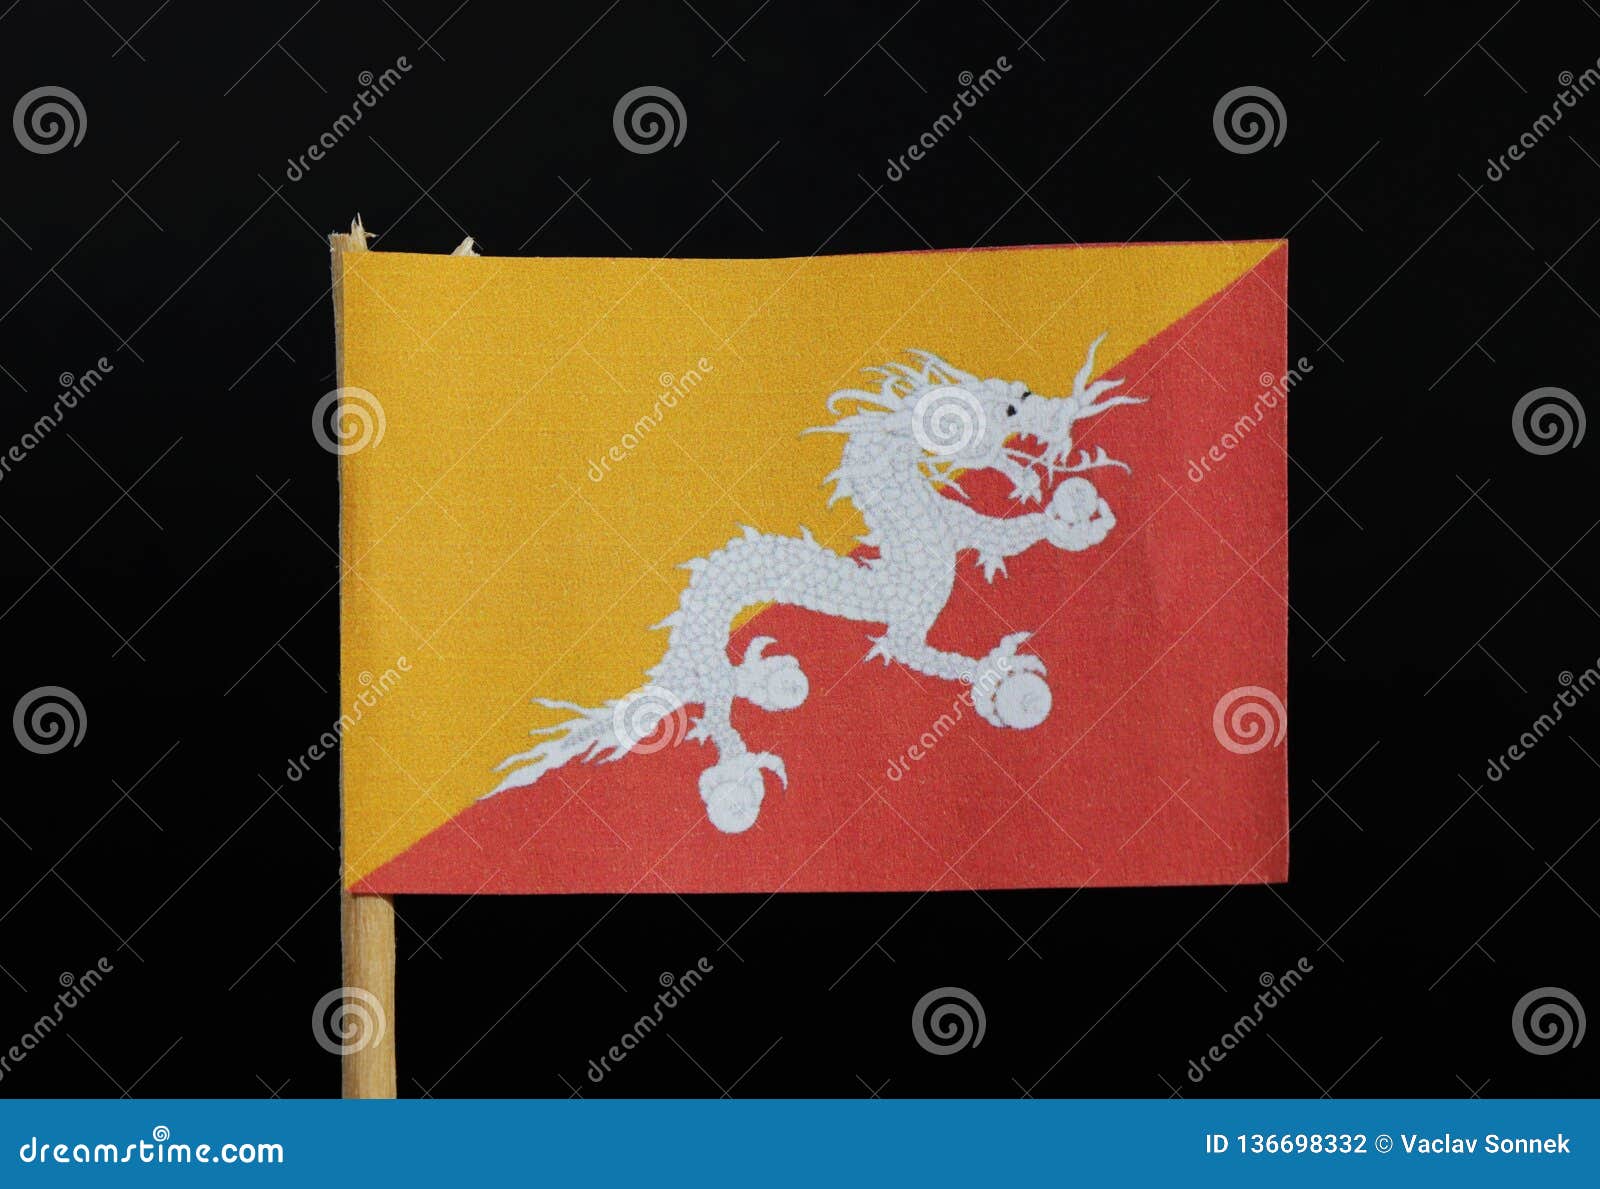 Lá cờ Bhutan với màu đỏ và vàng tươi sáng, với hình con rồng đang cưỡi trên một tàu thuyền. Lá cờ thể hiện sự bảo vệ và sự cân bằng giữa yin và yang trong đời sống người dân Bhutan. Hãy xem hình ảnh về lá cờ này để khám phá thêm văn hóa, tín ngưỡng, tầm nhìn của đất nước Bhutan.